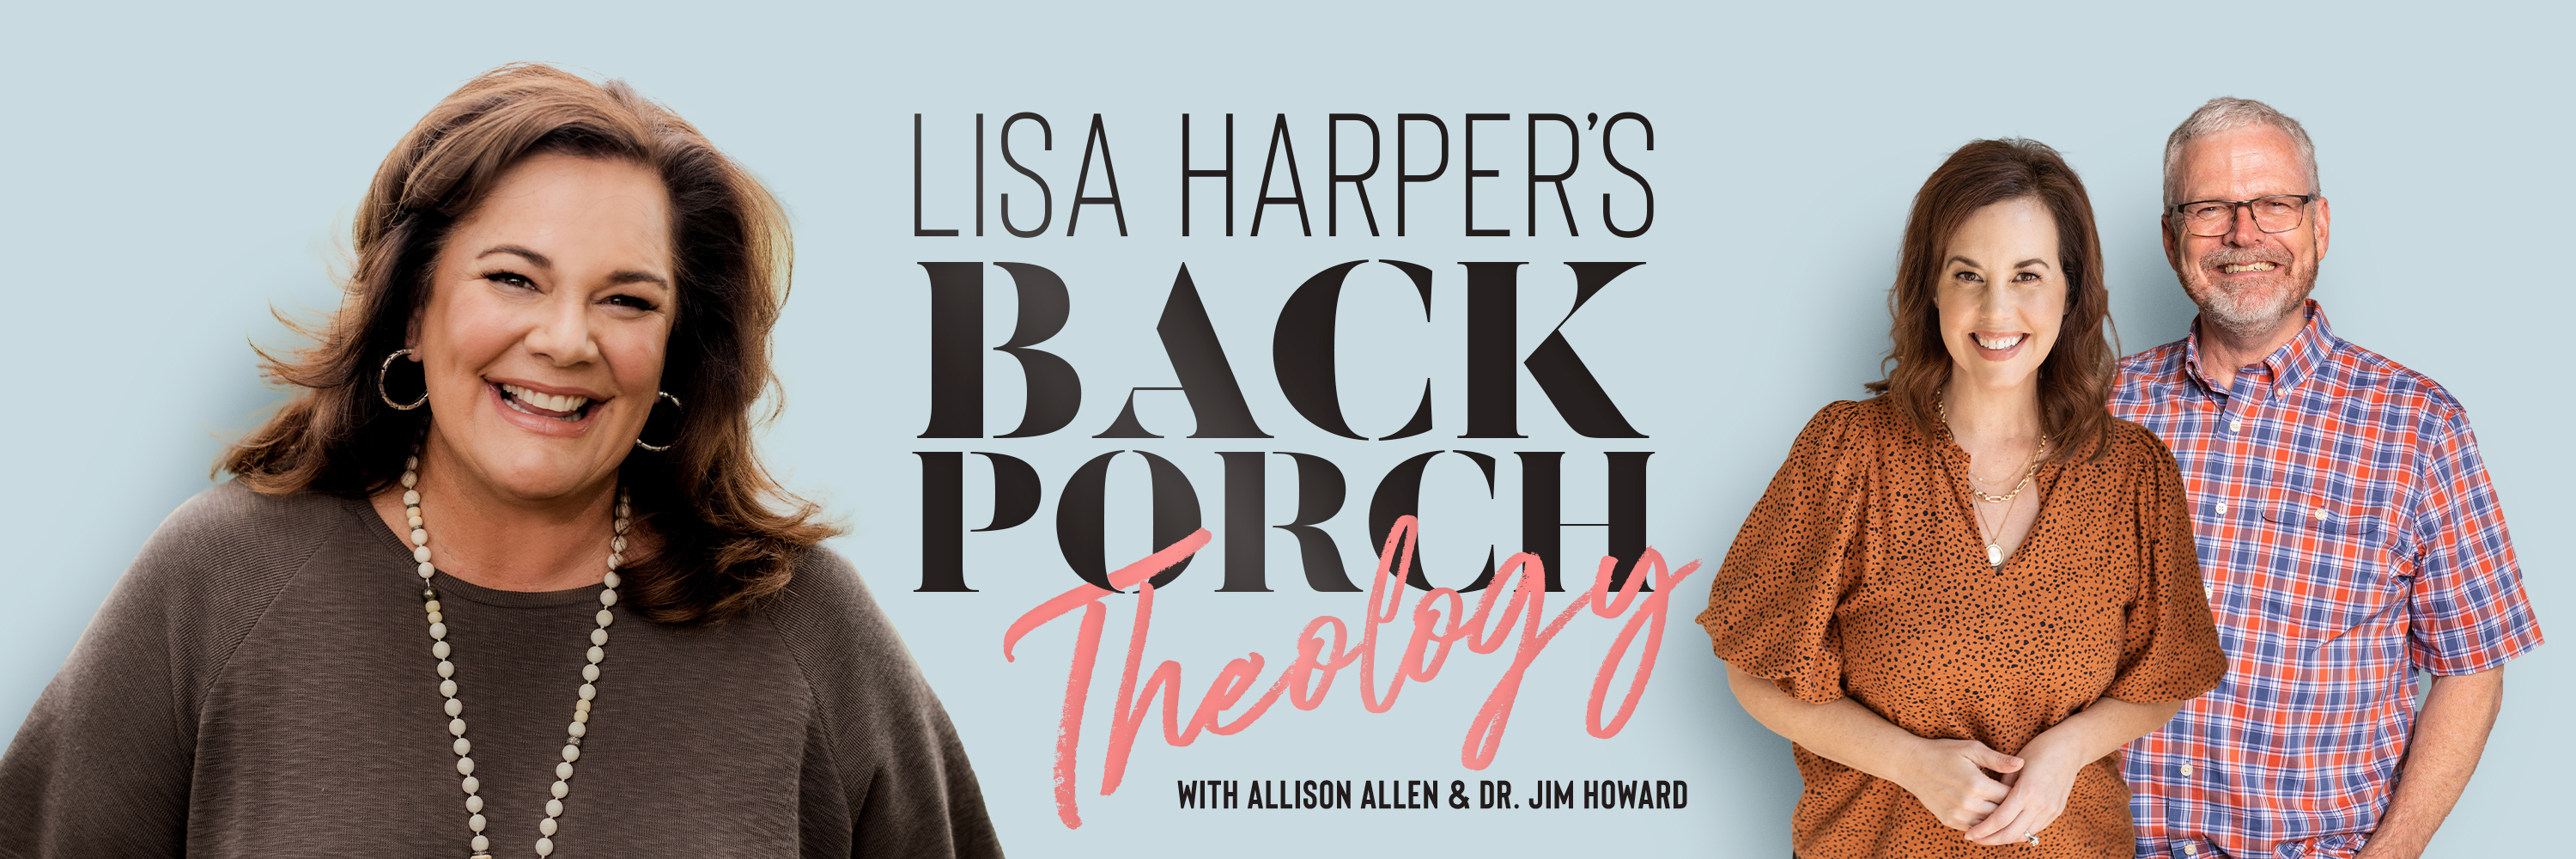 Lisa Harper's Back Porch Theology